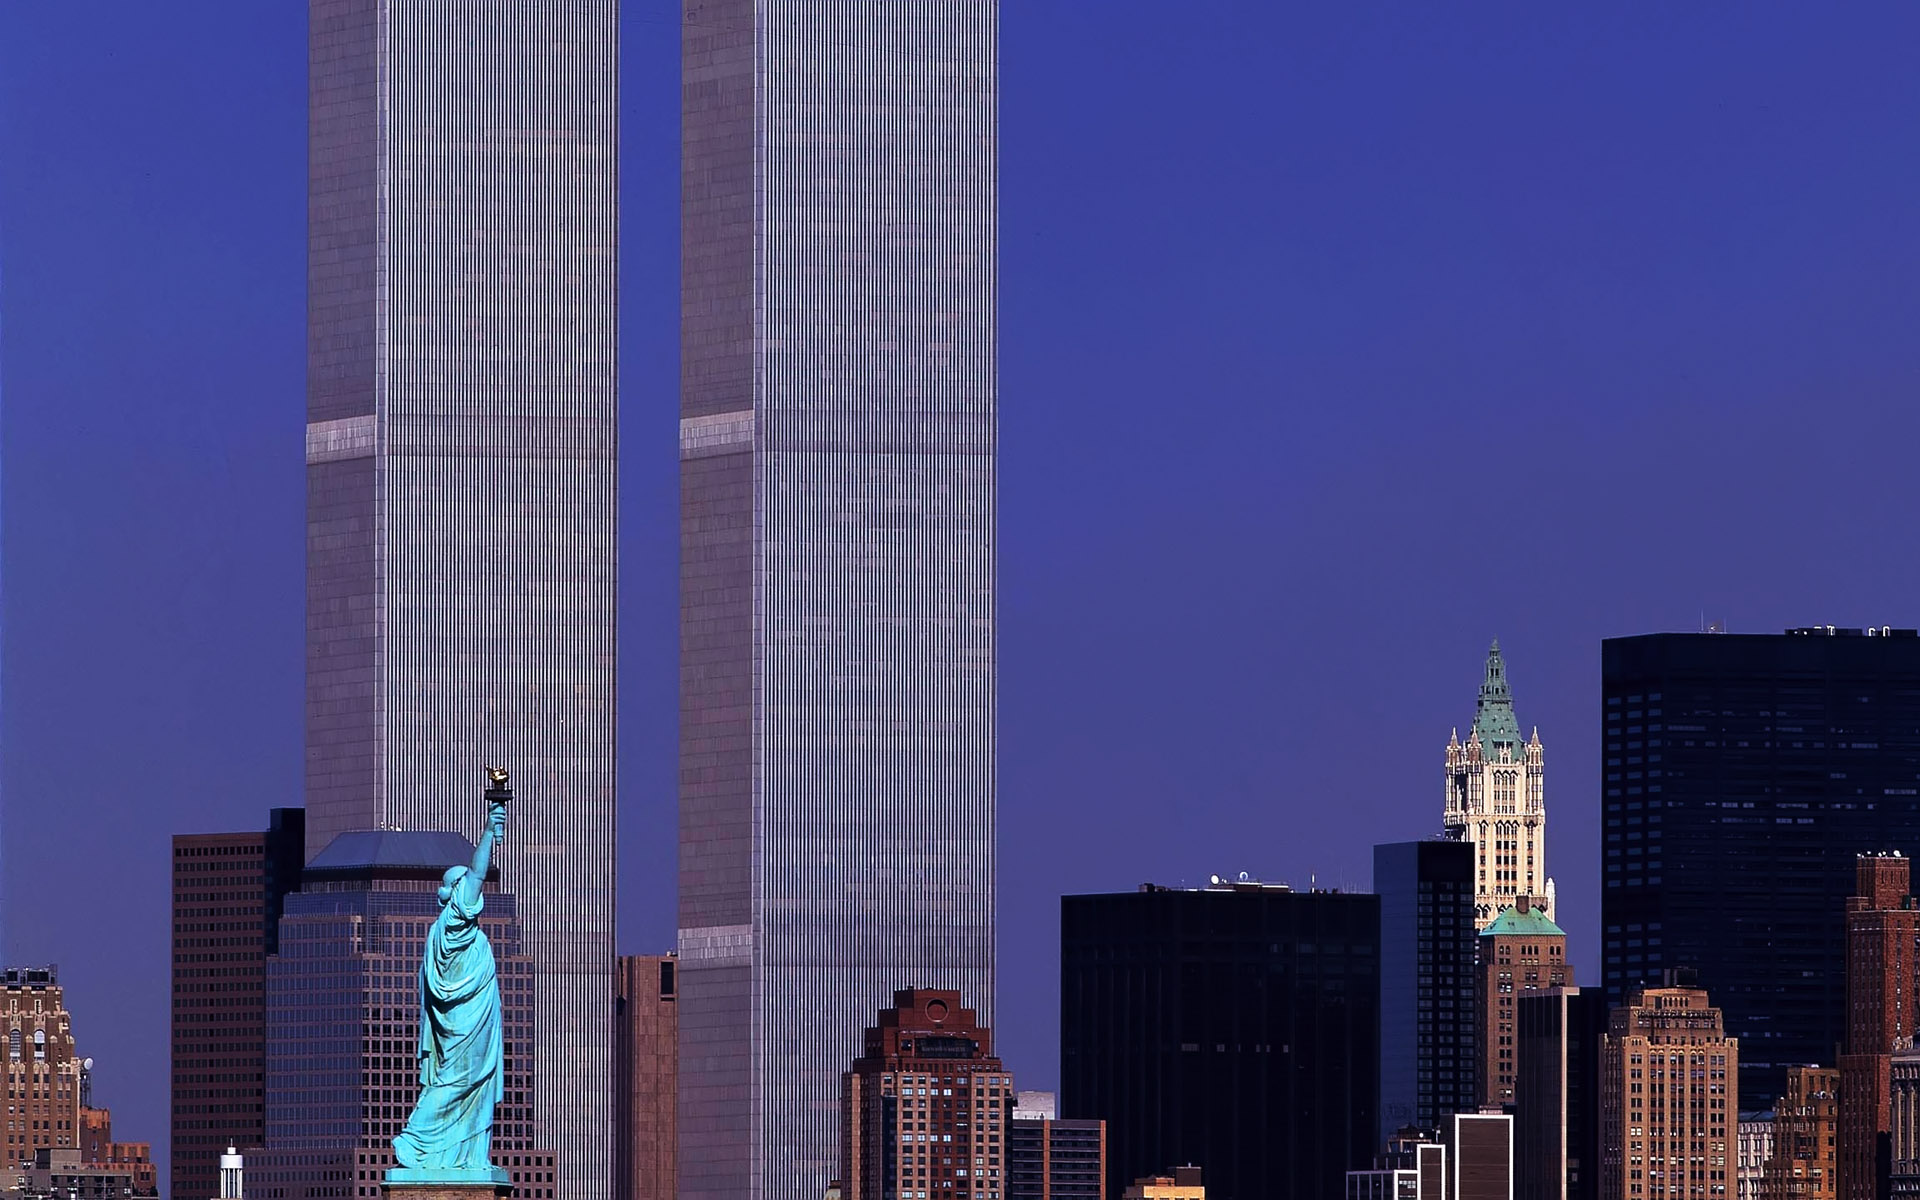 Сколько этажей было в башнях близнецах. ВТЦ Нью-Йорк. Башни Близнецы в Нью-Йорке. Всемирный торговый центр башни Близнецы. Небоскреб ВТЦ В Нью Йорке.